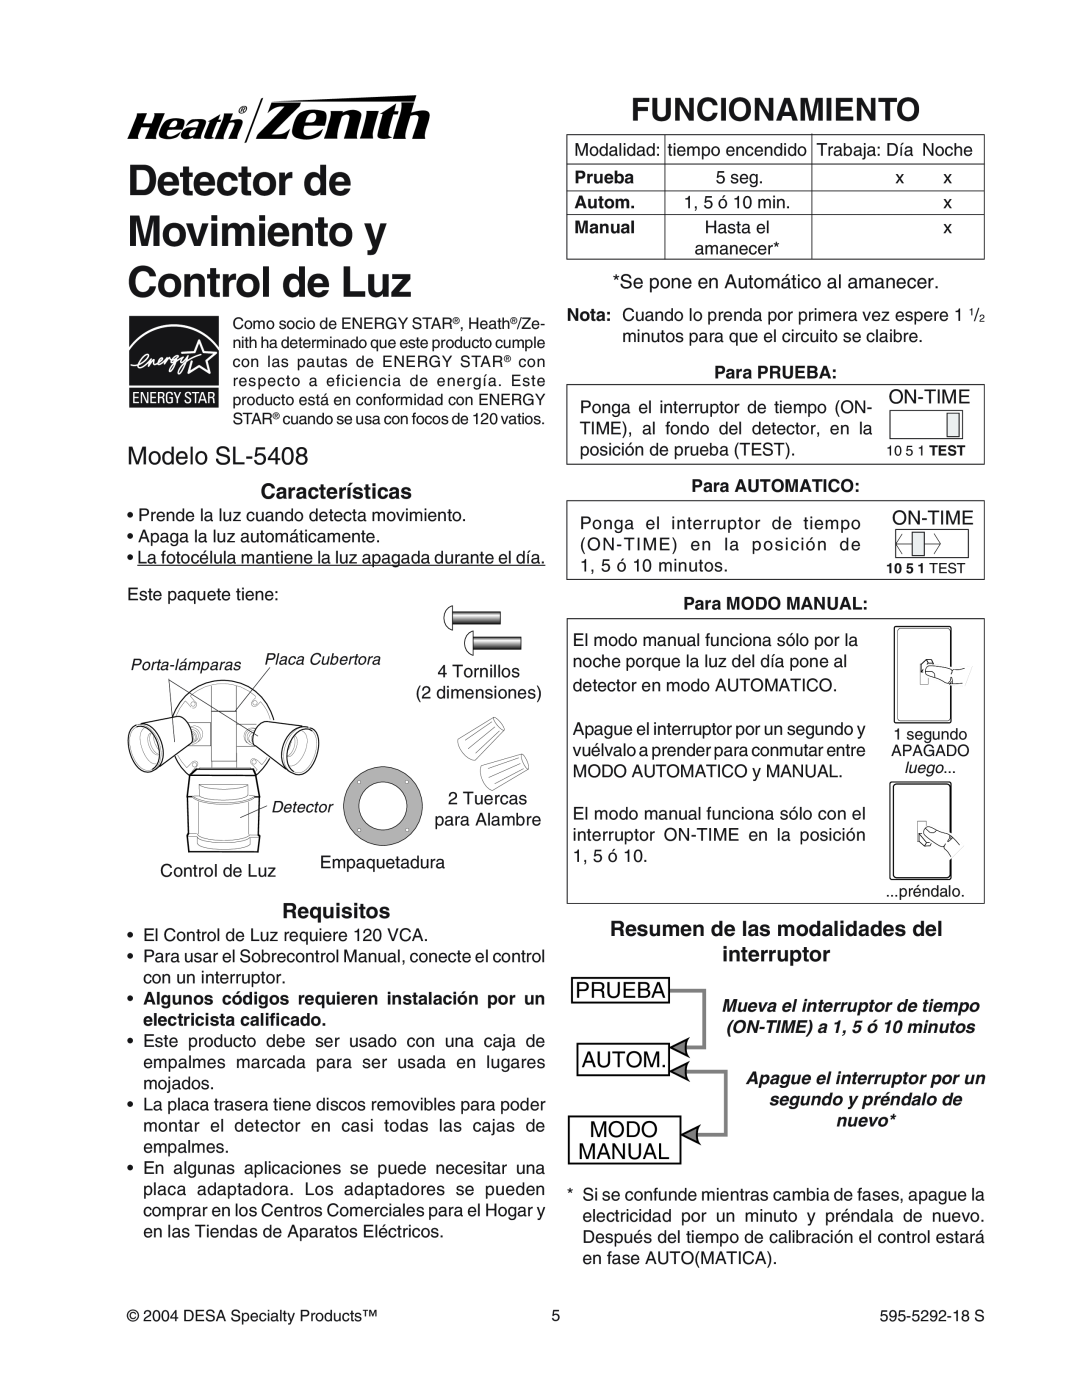 Heath Zenith SL-5408-WH Detector de Movimiento y Control de Luz, Funcionamiento, Modelo SL-5408, Caracter’sticas, Prueba 